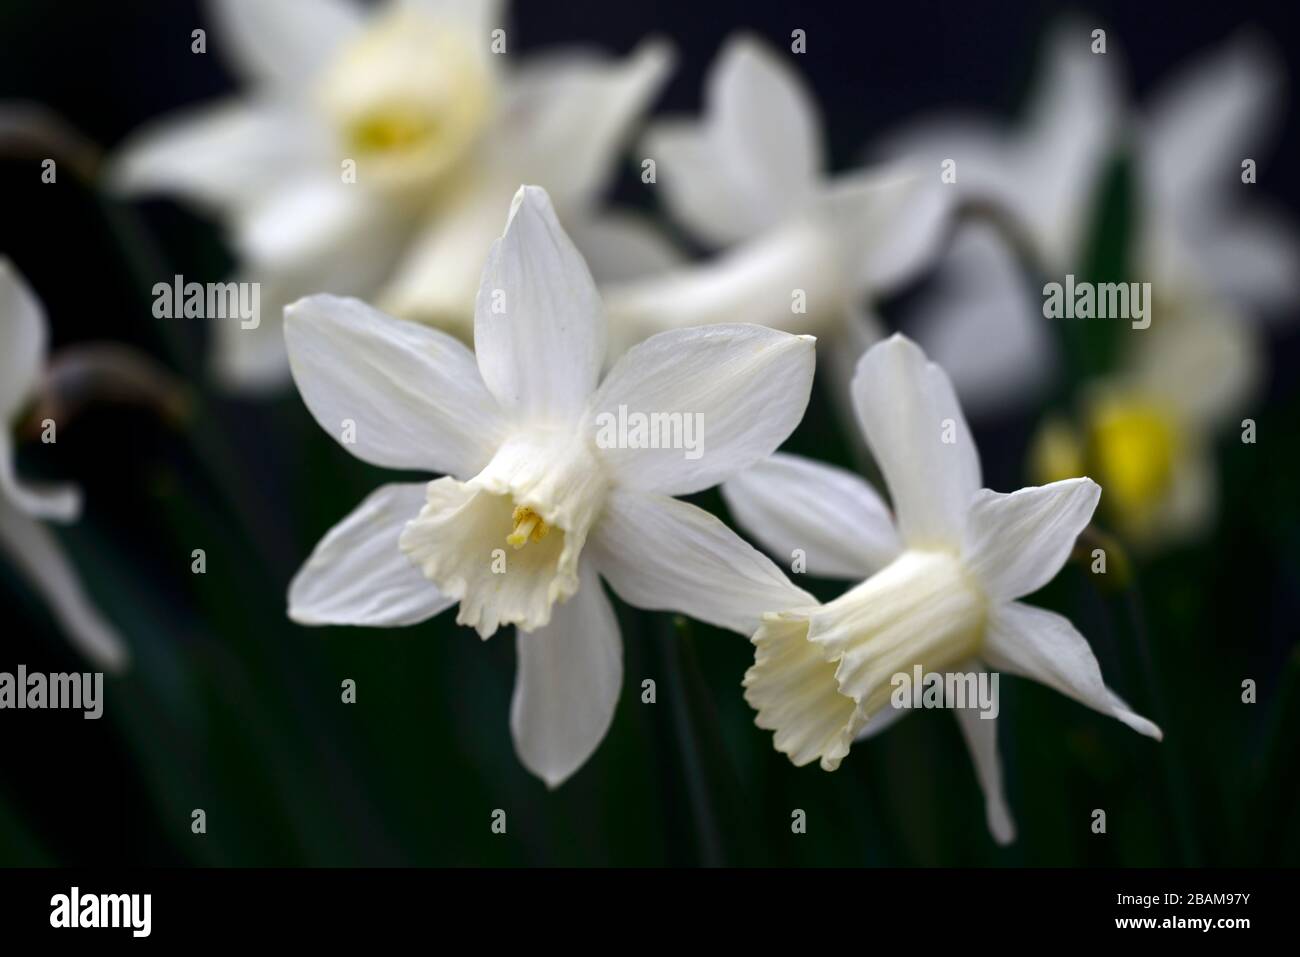 Narcisse Snow Baby,narcissi,daffodil,jonquilles,trompette crème blanche,trompettes,fleur de crème blanche,fleurs,floraison,miniature,petite,courte,RM Floral Banque D'Images